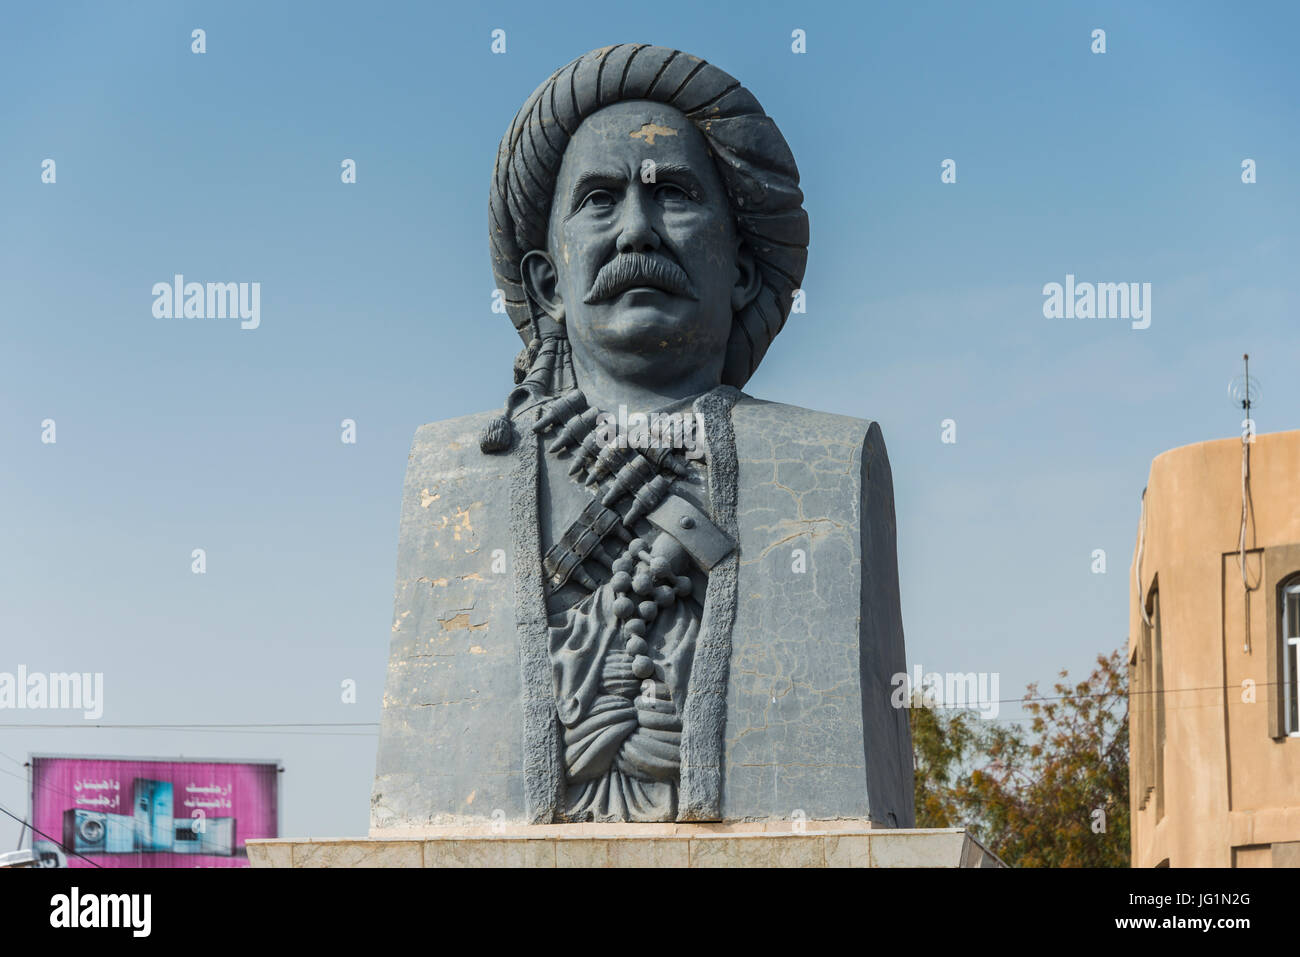 Statua di Massoud Barzani, Presidente curdo a Erbil o Hawler, capitale del Kurdistan iracheno Foto Stock